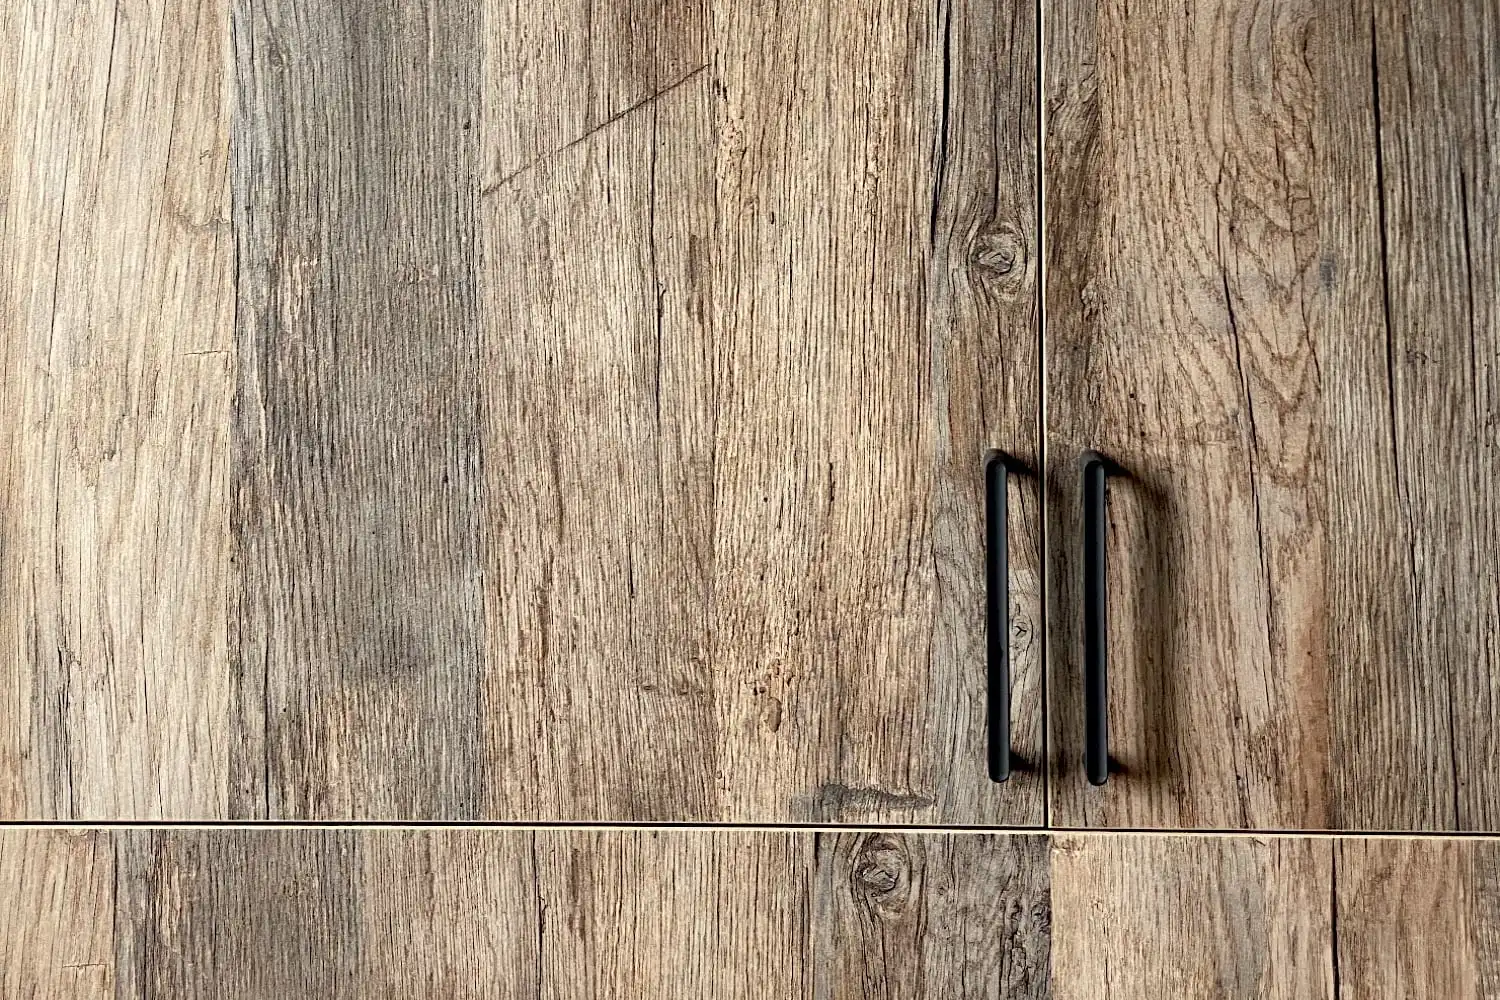 Porte d'armoire en bois avec poignée verticale noire et panneau 3 plis vieux bois.